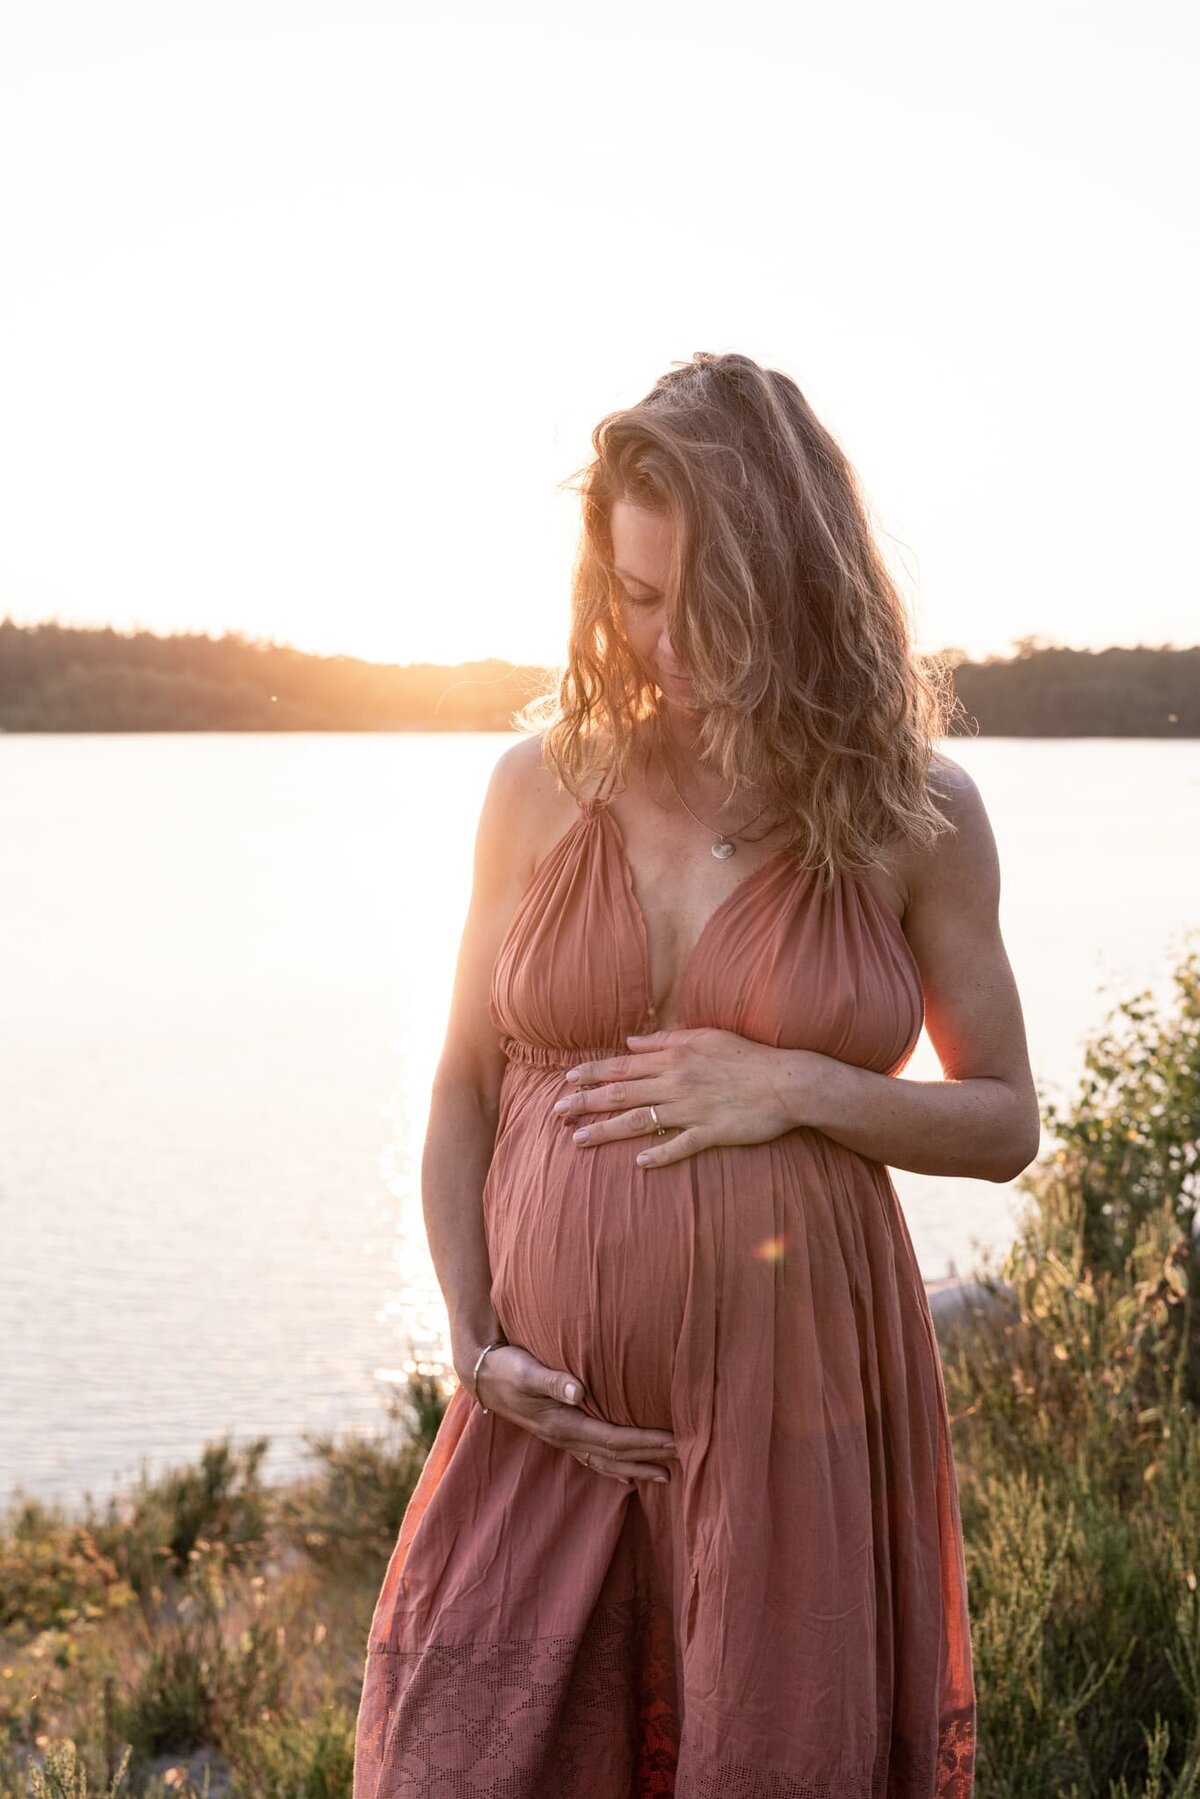 zwangerschaps fotograaf Drenthe, Groningen, Friesland - romantische intieme zwangerschapsshoot bij het water met zonsondergang.